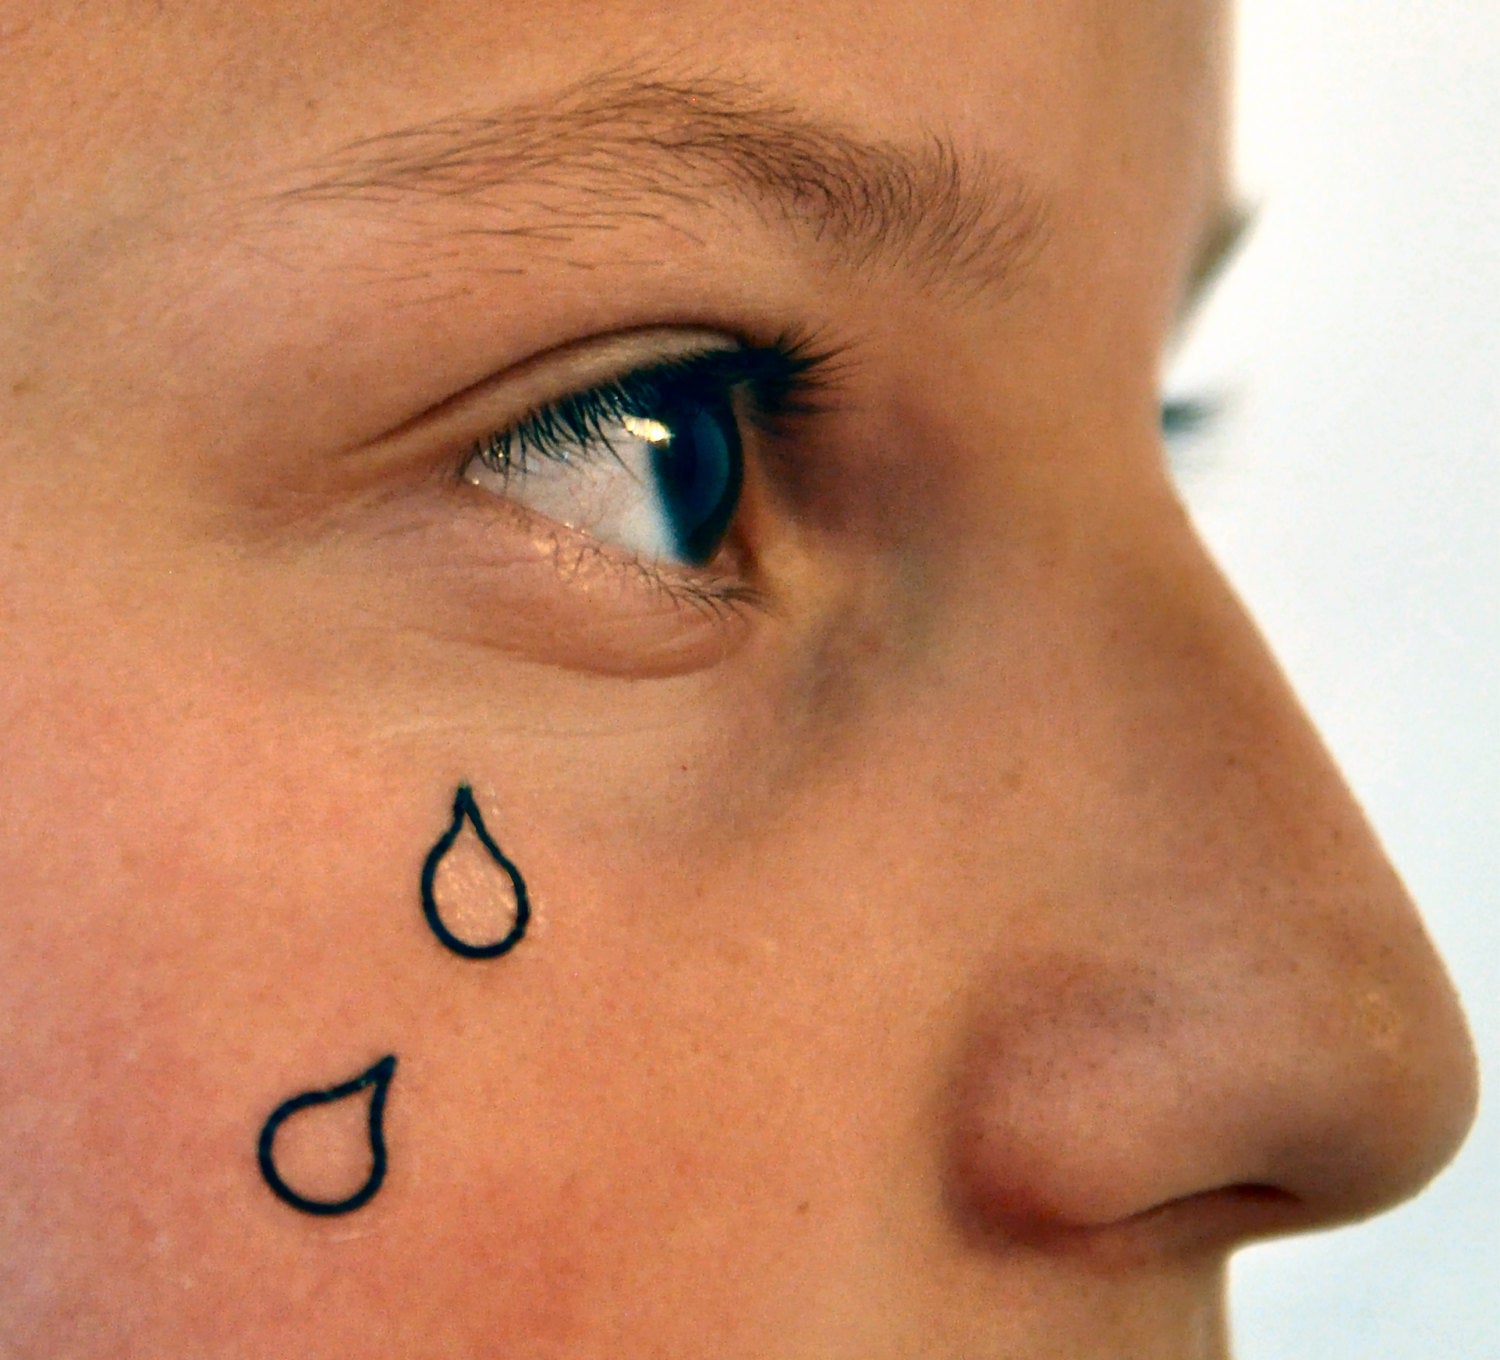 Significado da tatuagem de lágrima no rosto